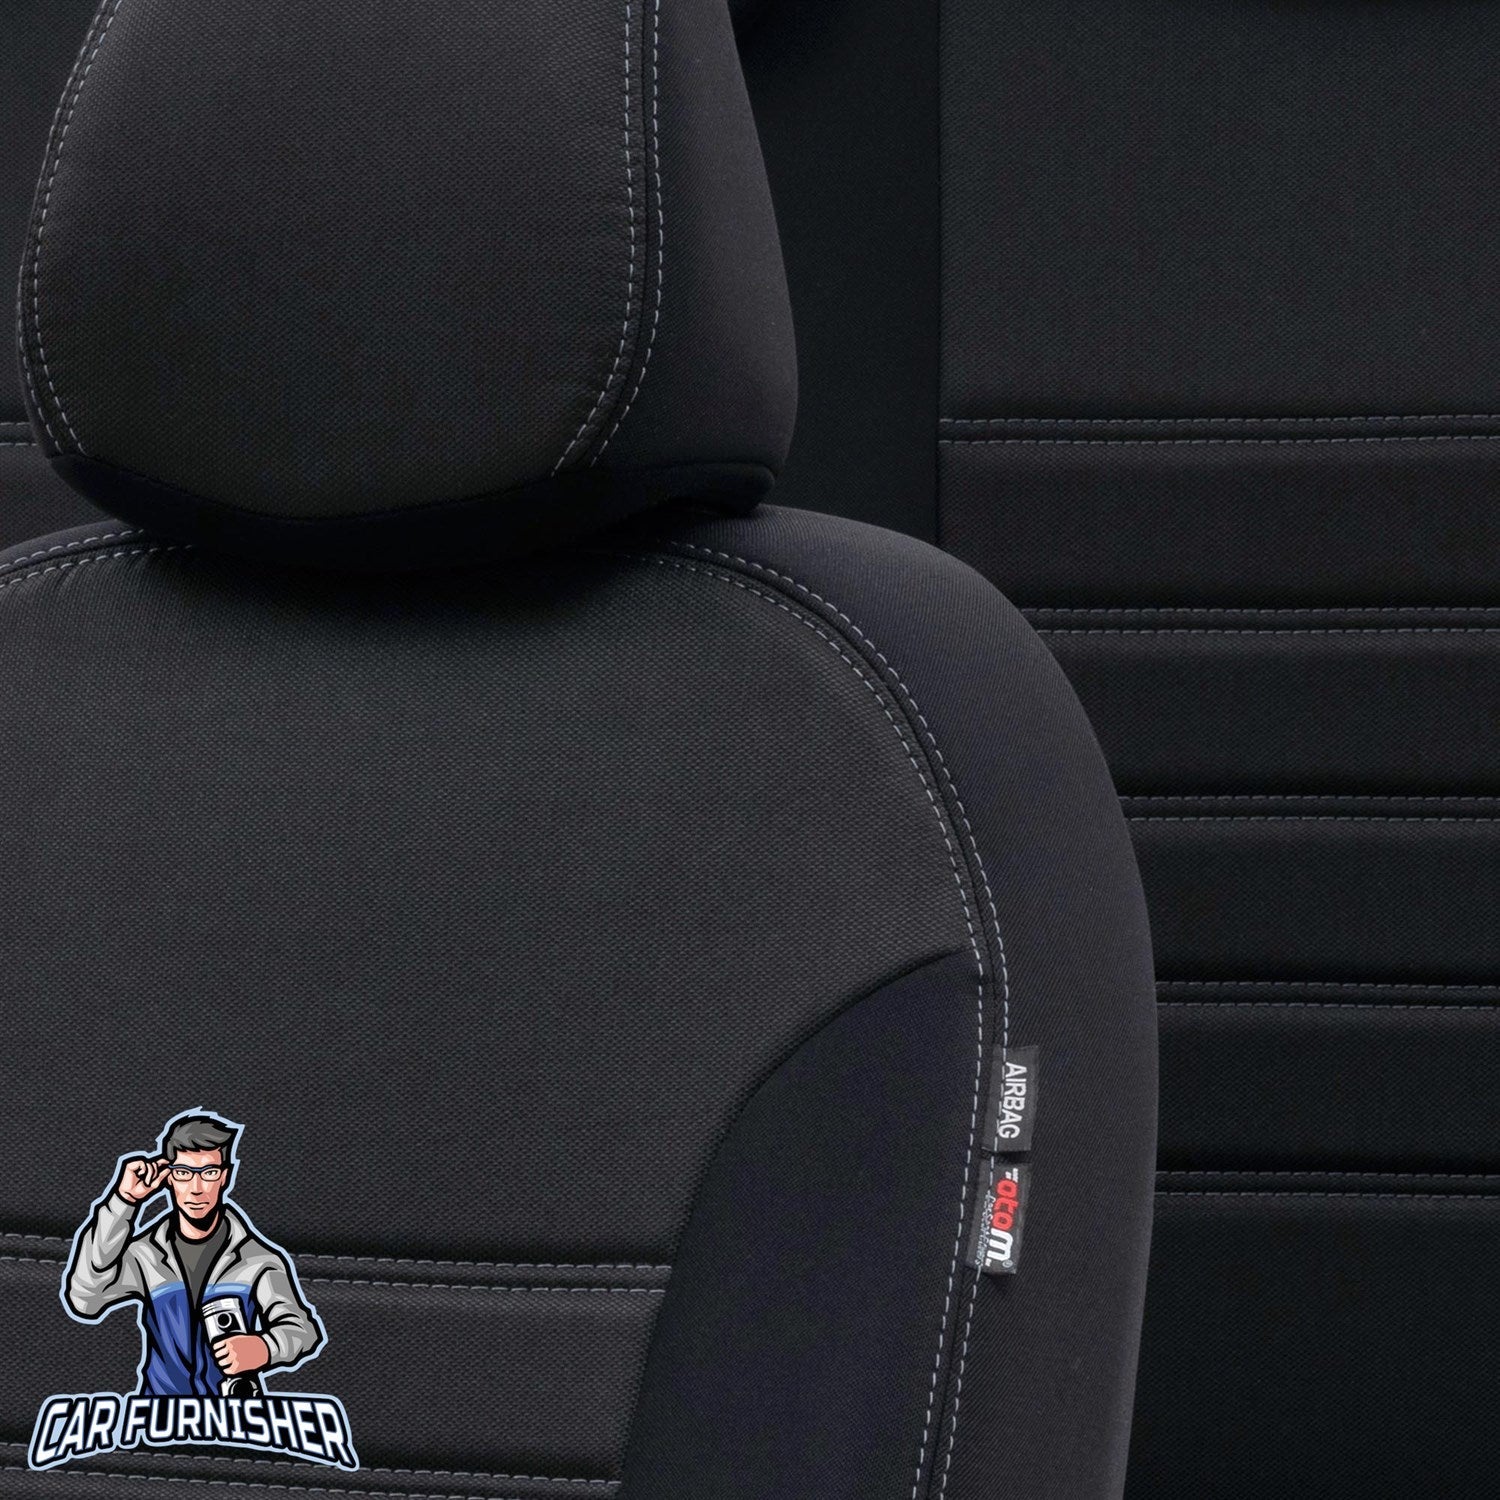 Skoda Roomster Car Seat Covers 2007-2014 Original Design Black Jacquard Fabric